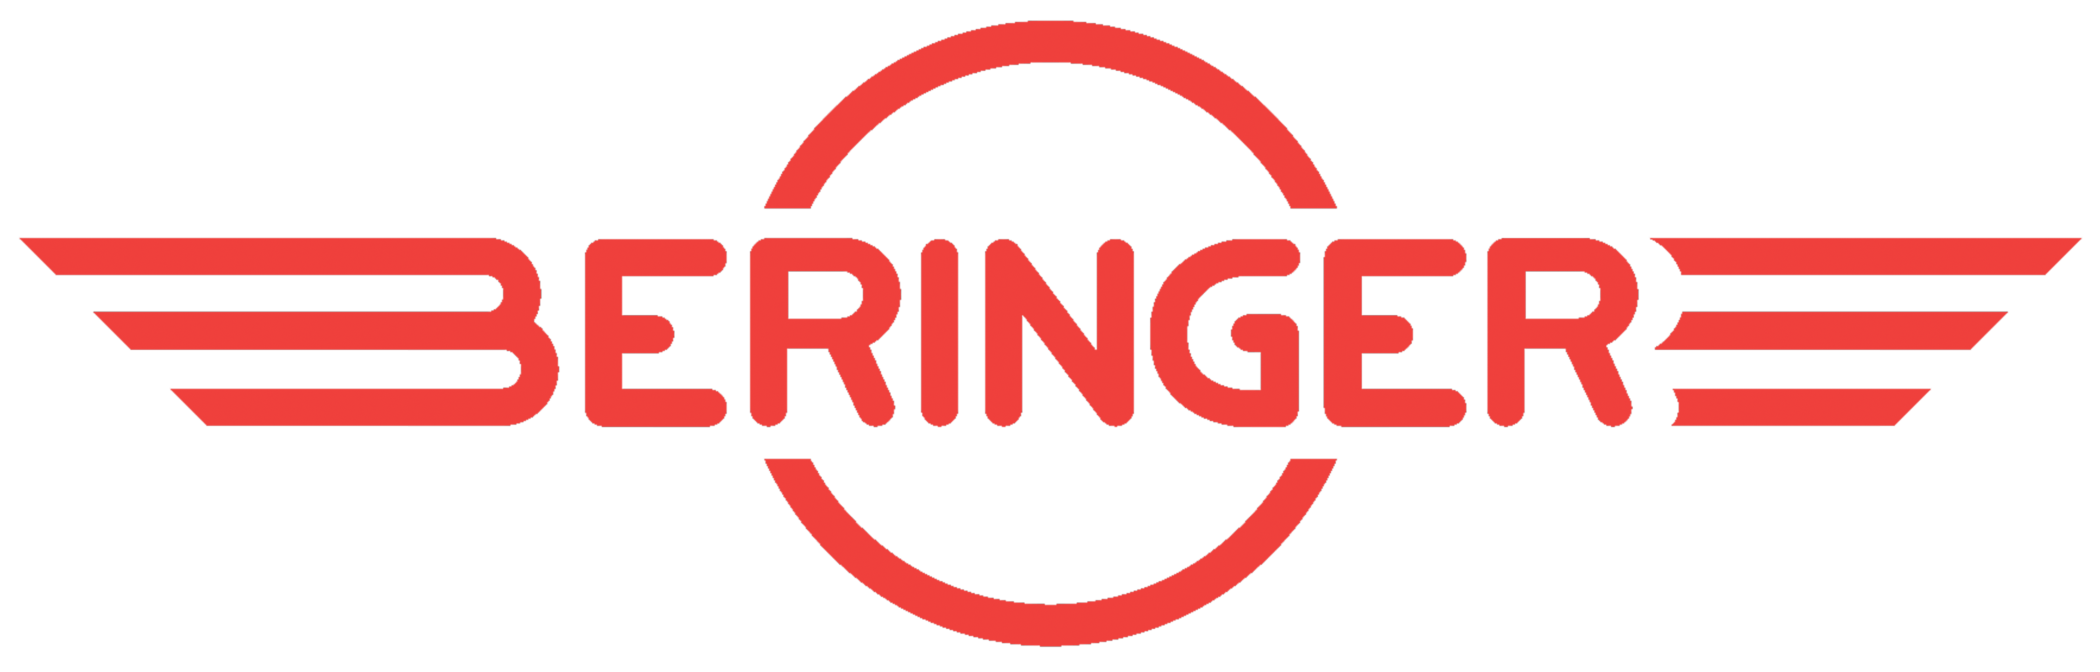 Beringer Logo